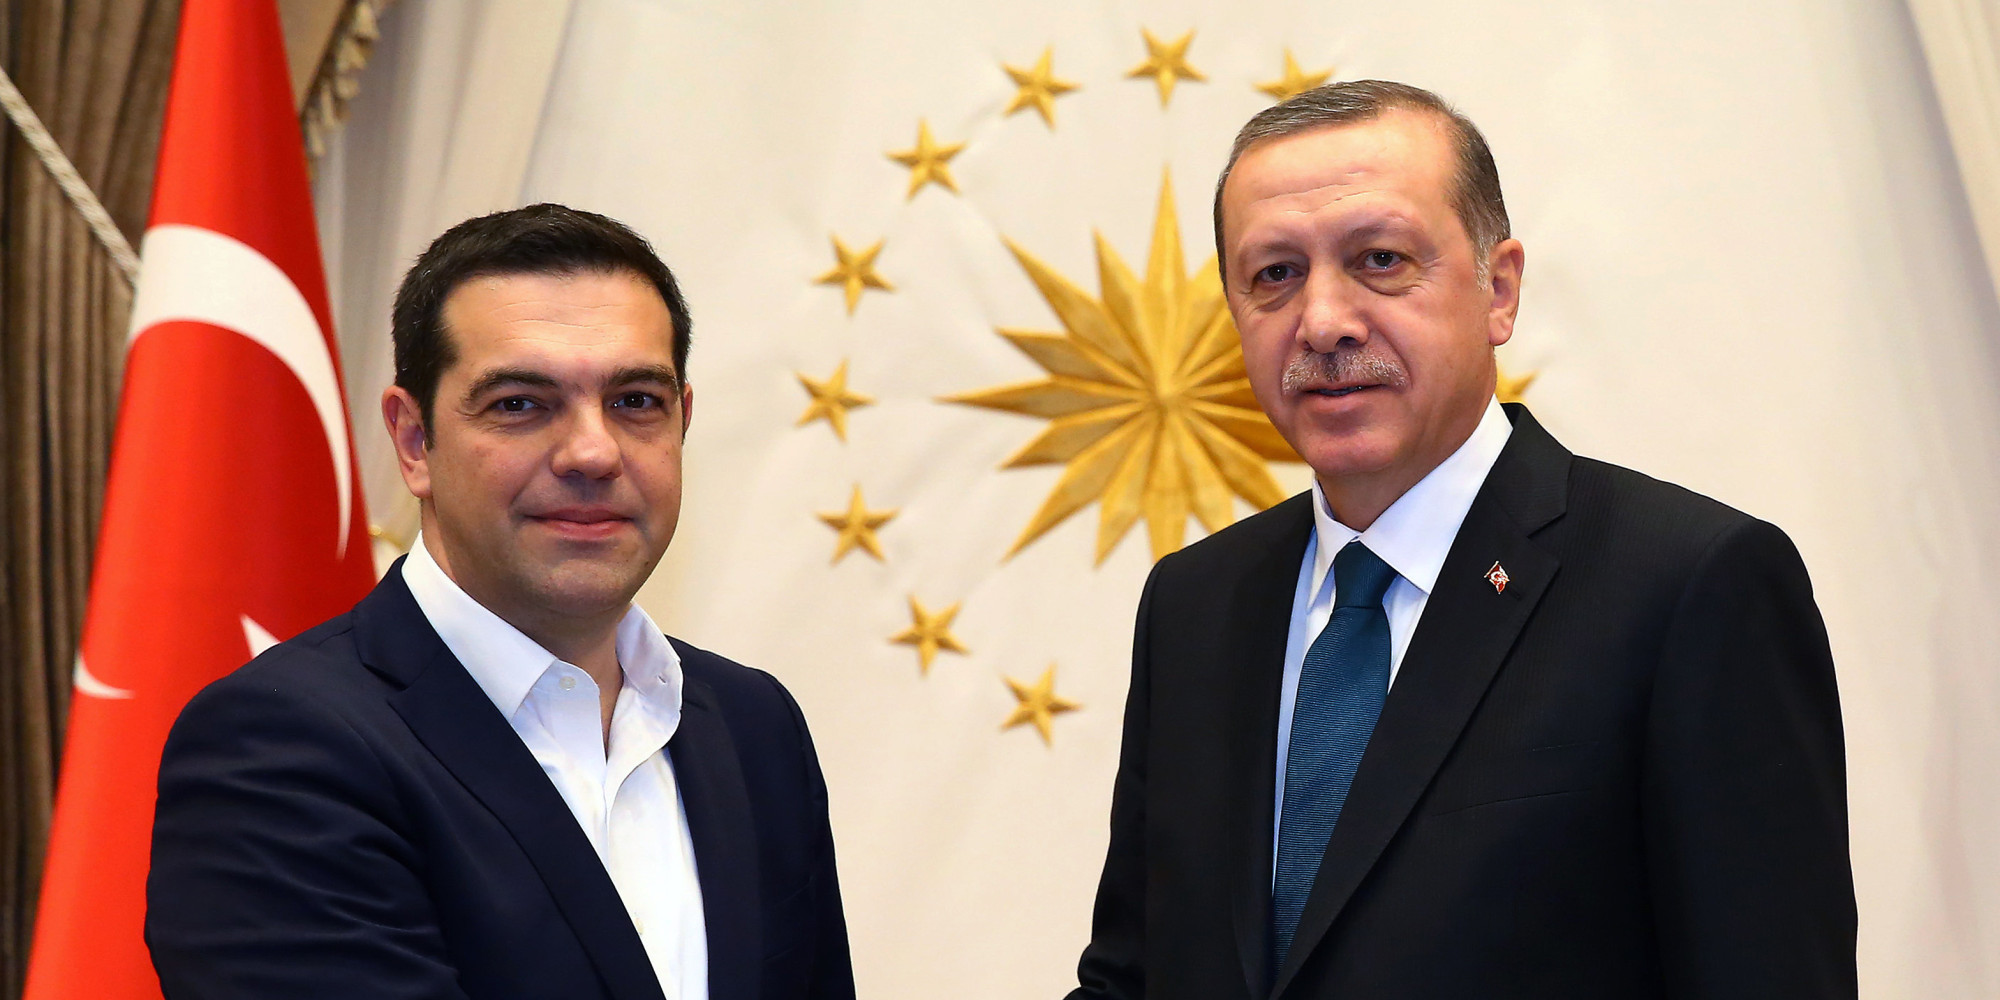 Ο Α.Τσίπρας στην Τουρκία συζητά και διαπραγματεύεται για όλα με τον Ρ.Τ.Ερντογάν